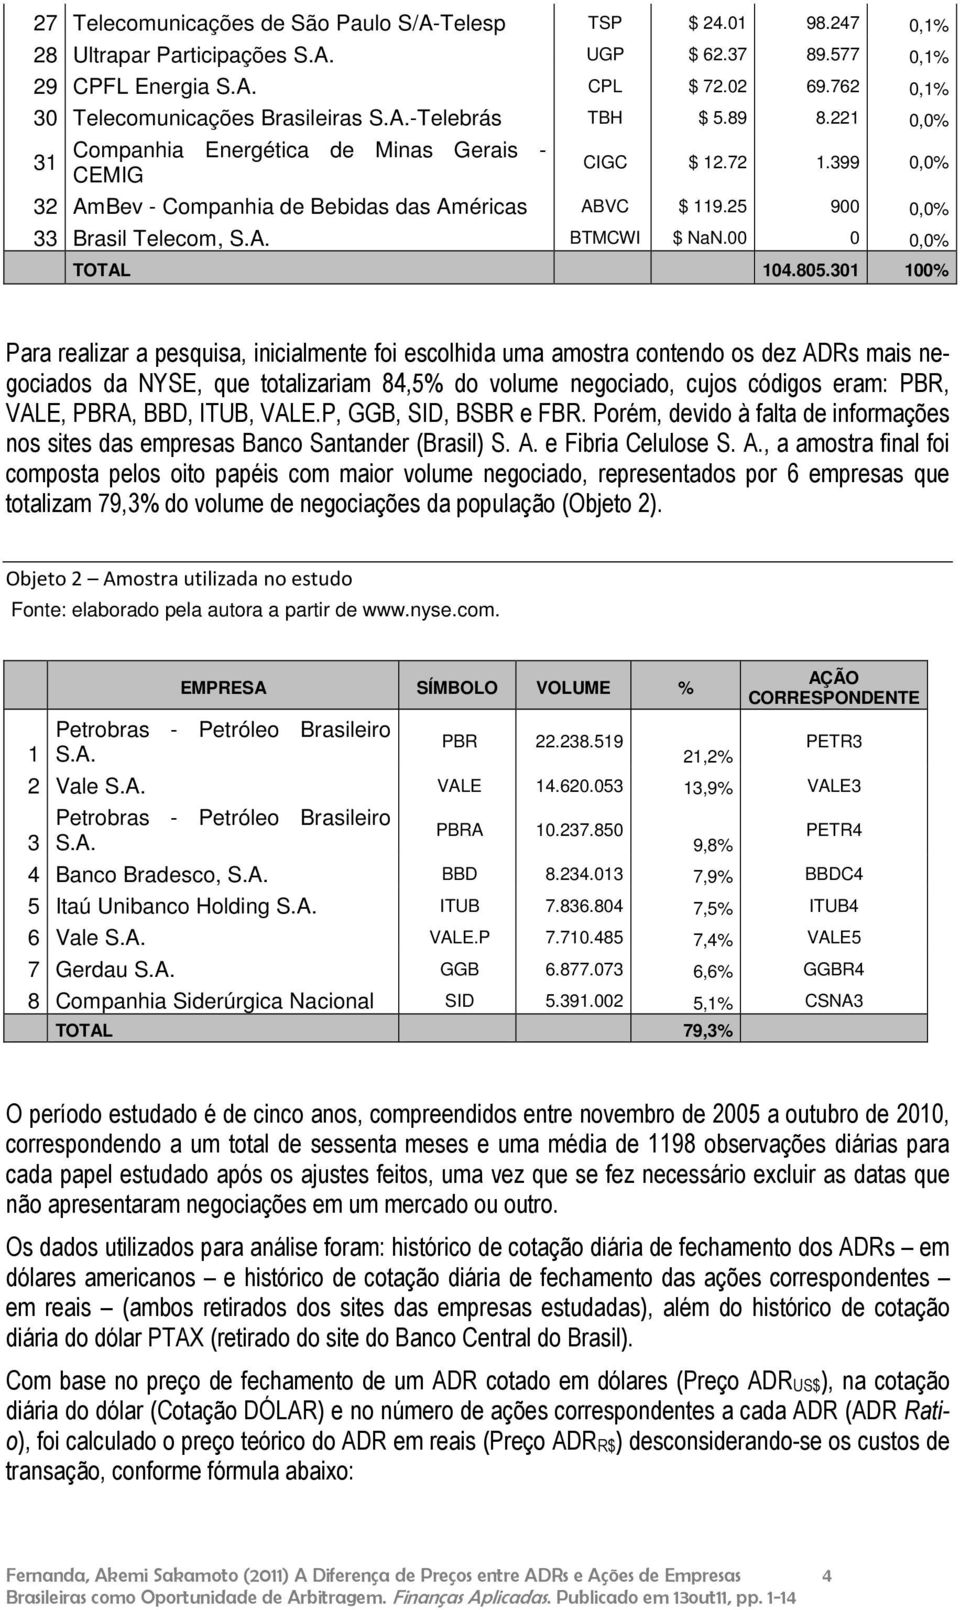 399 0,0% 32 AmBev - Companhia de Bebidas das Américas ABVC $ 119.25 900 0,0% 33 Brasil Telecom, S.A. BTMCWI $ NaN.00 0 0,0% TOTAL 104.805.